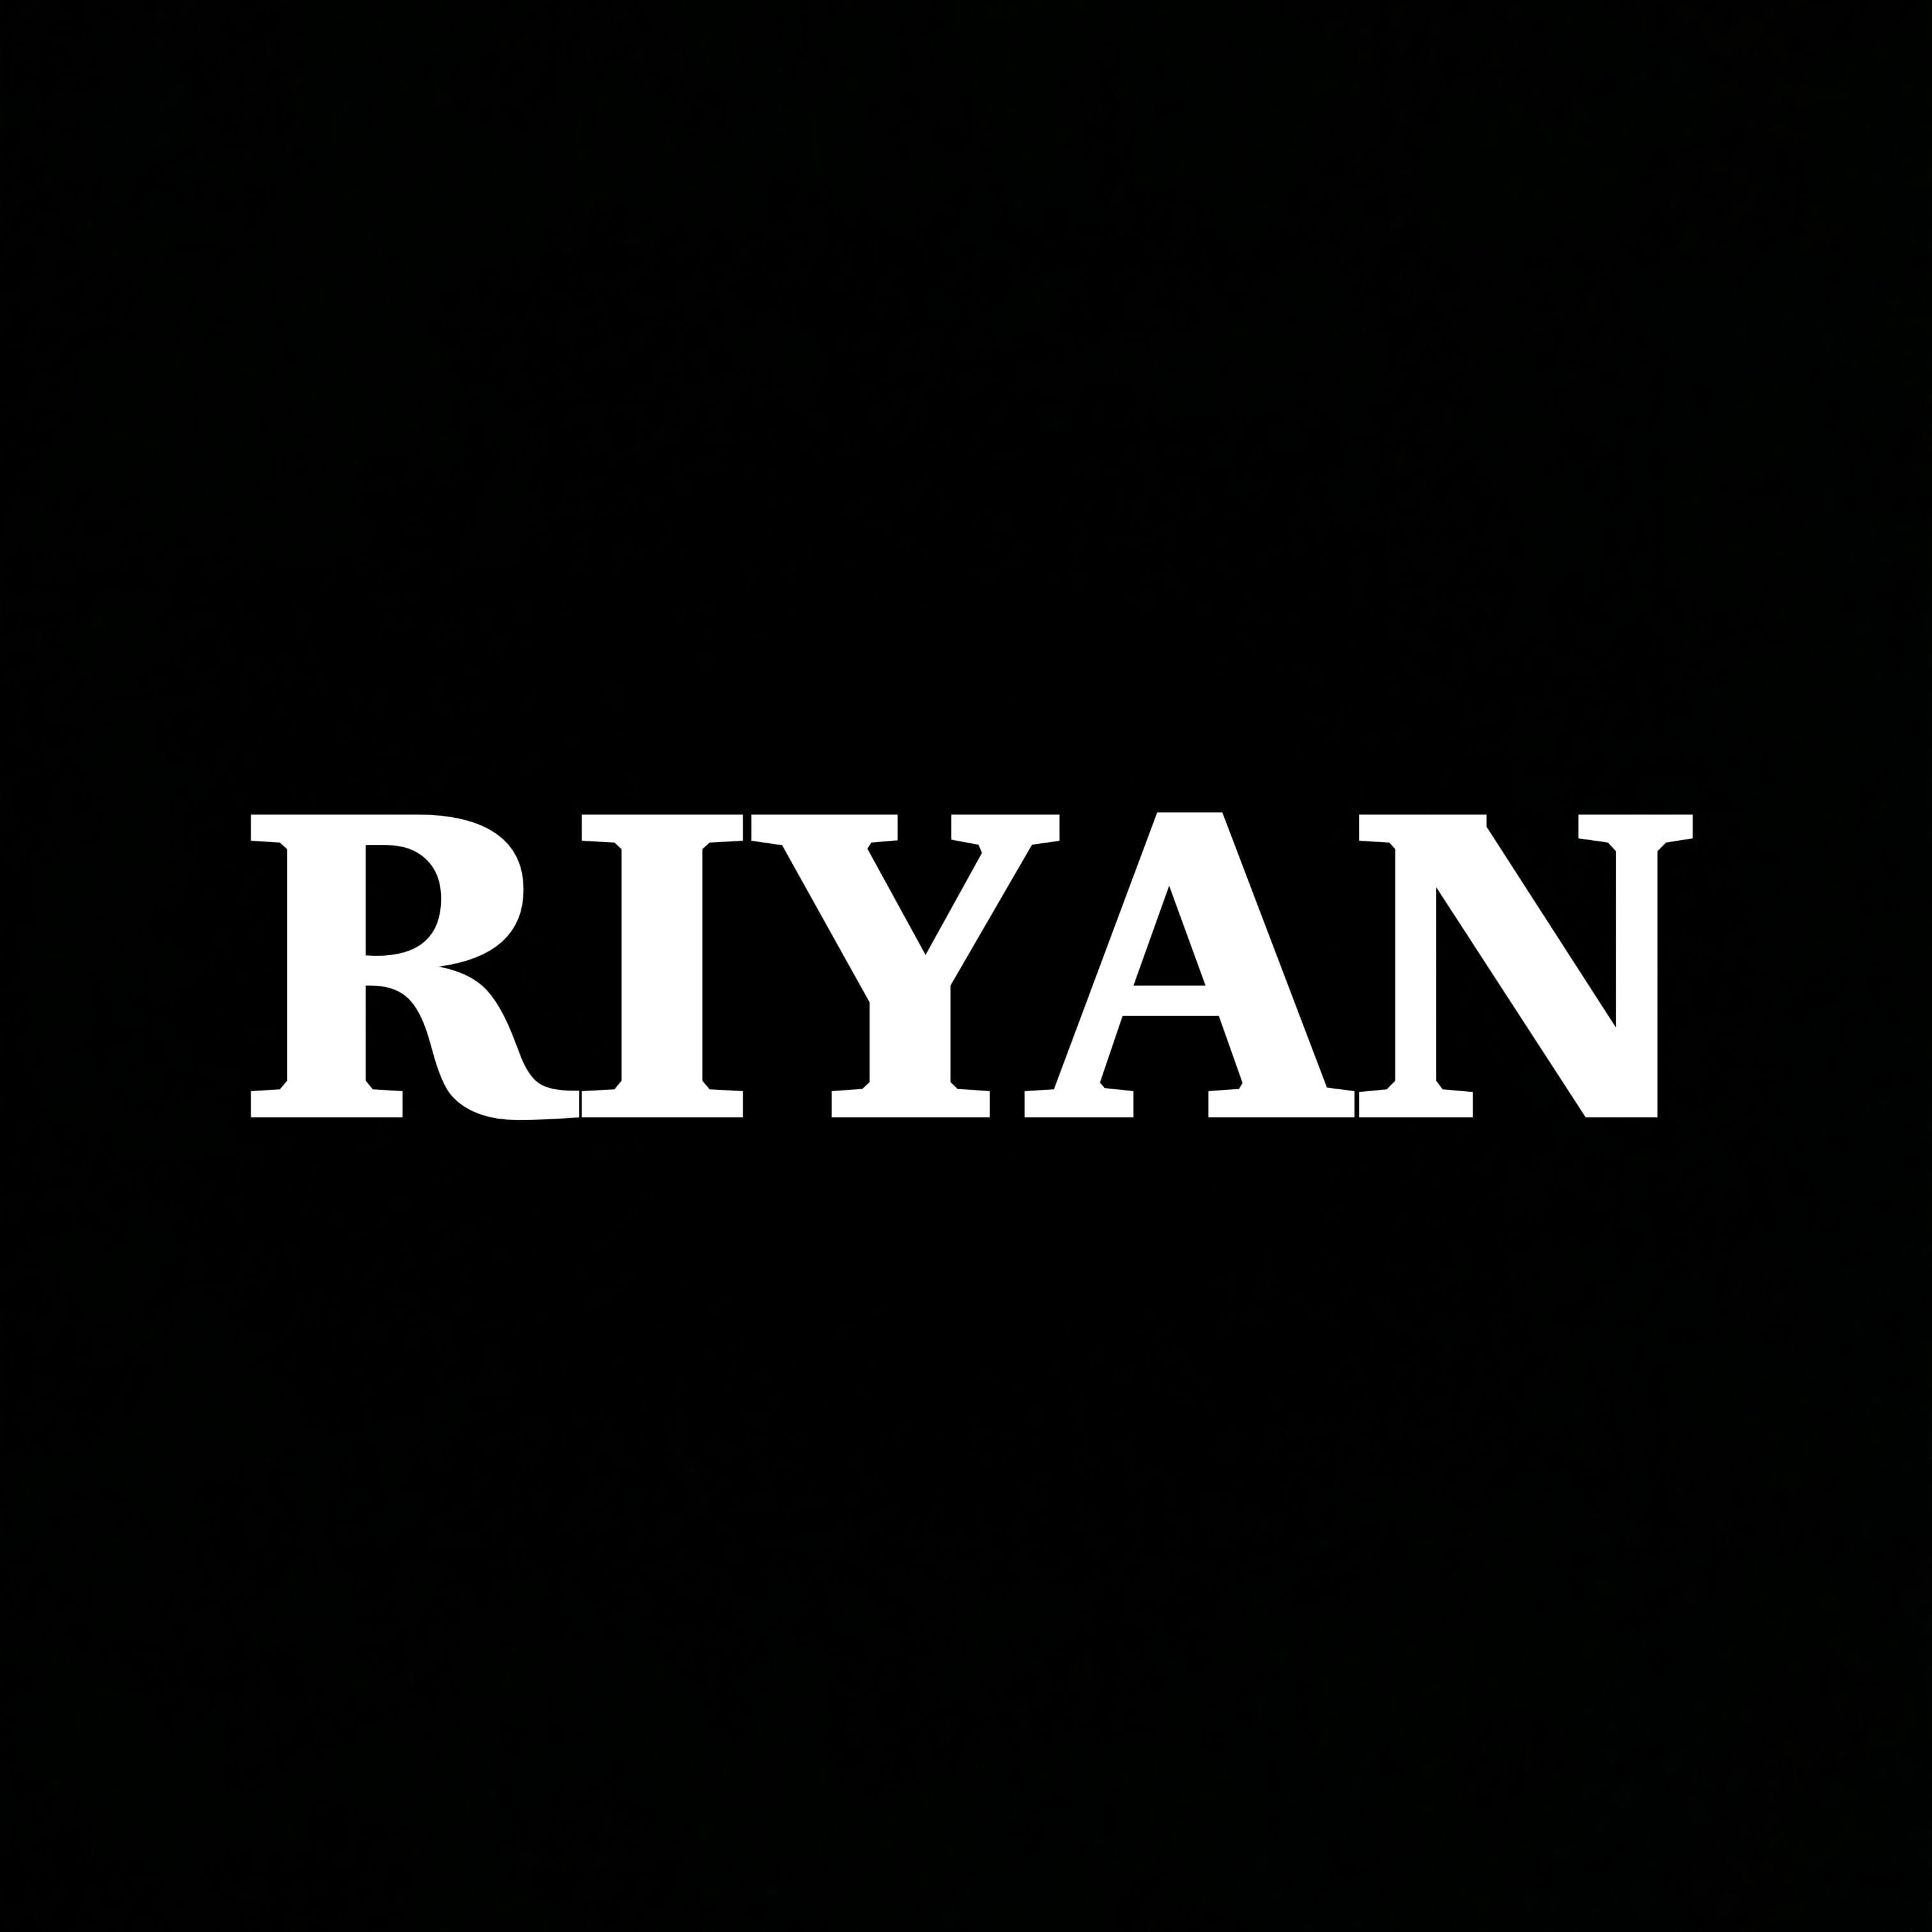 RIYAN